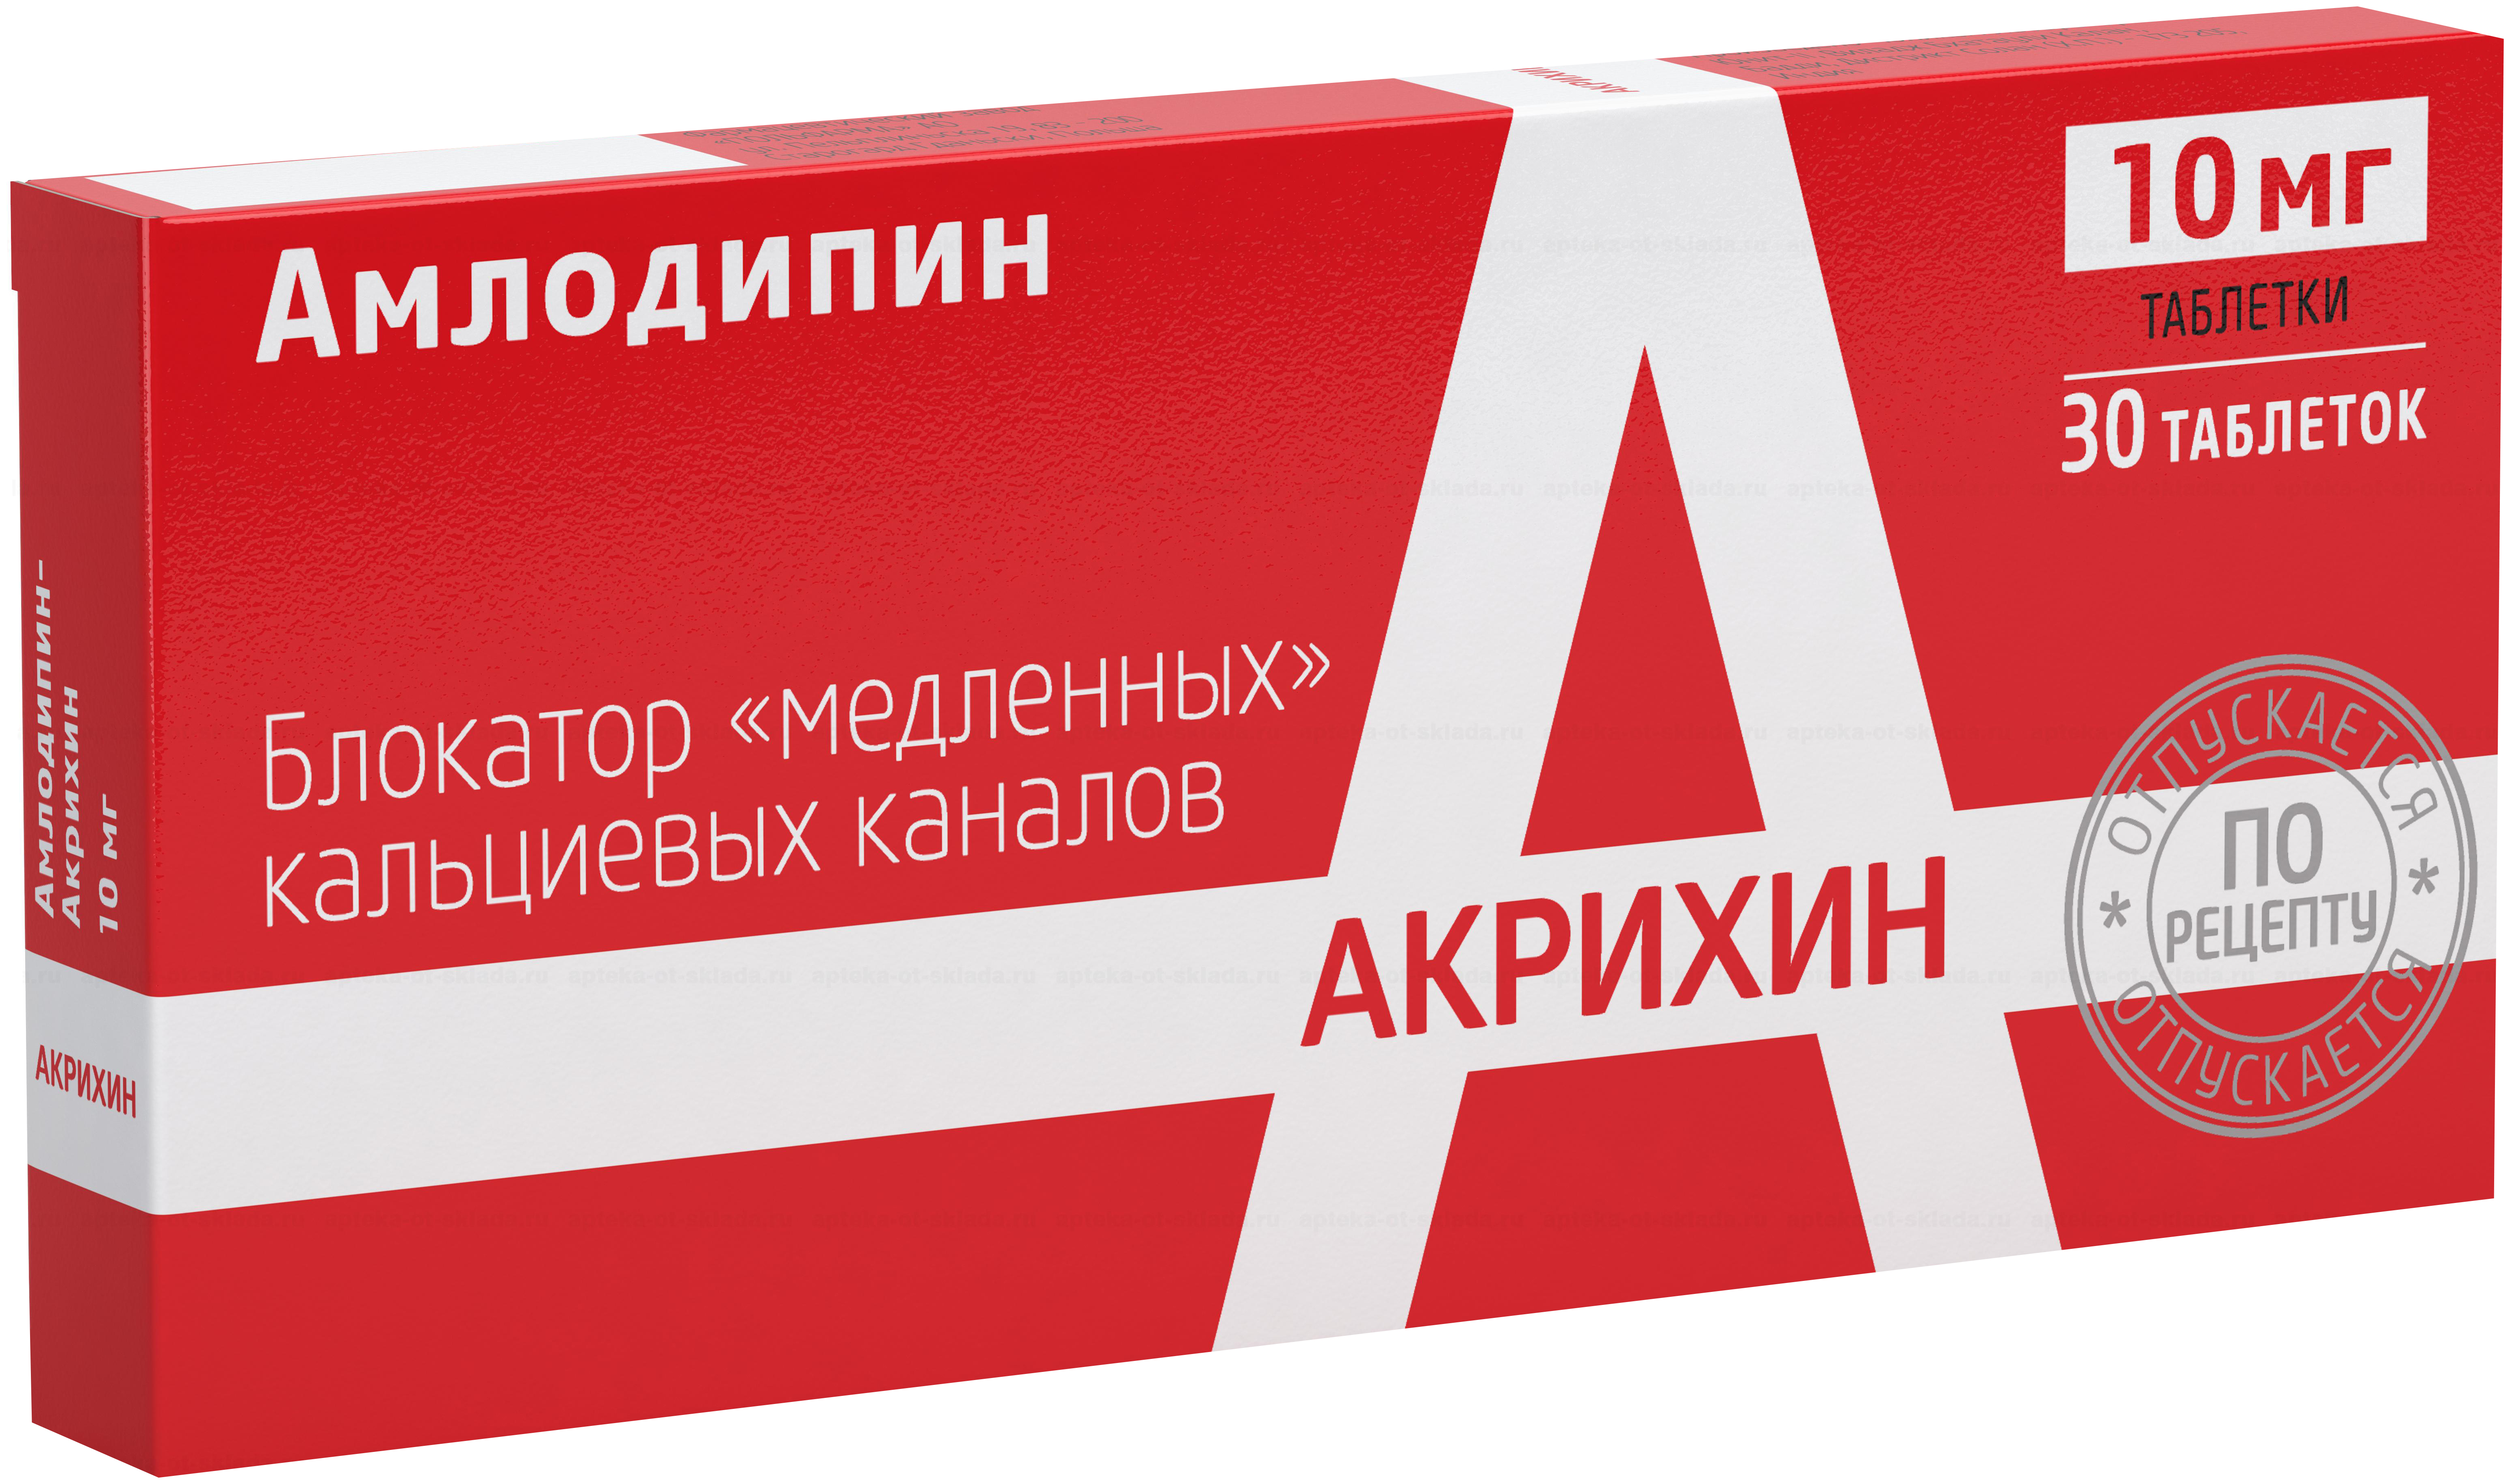 АМЛОДИПИН-АКРИХИН таблетки 10 мг 30 шт. фото